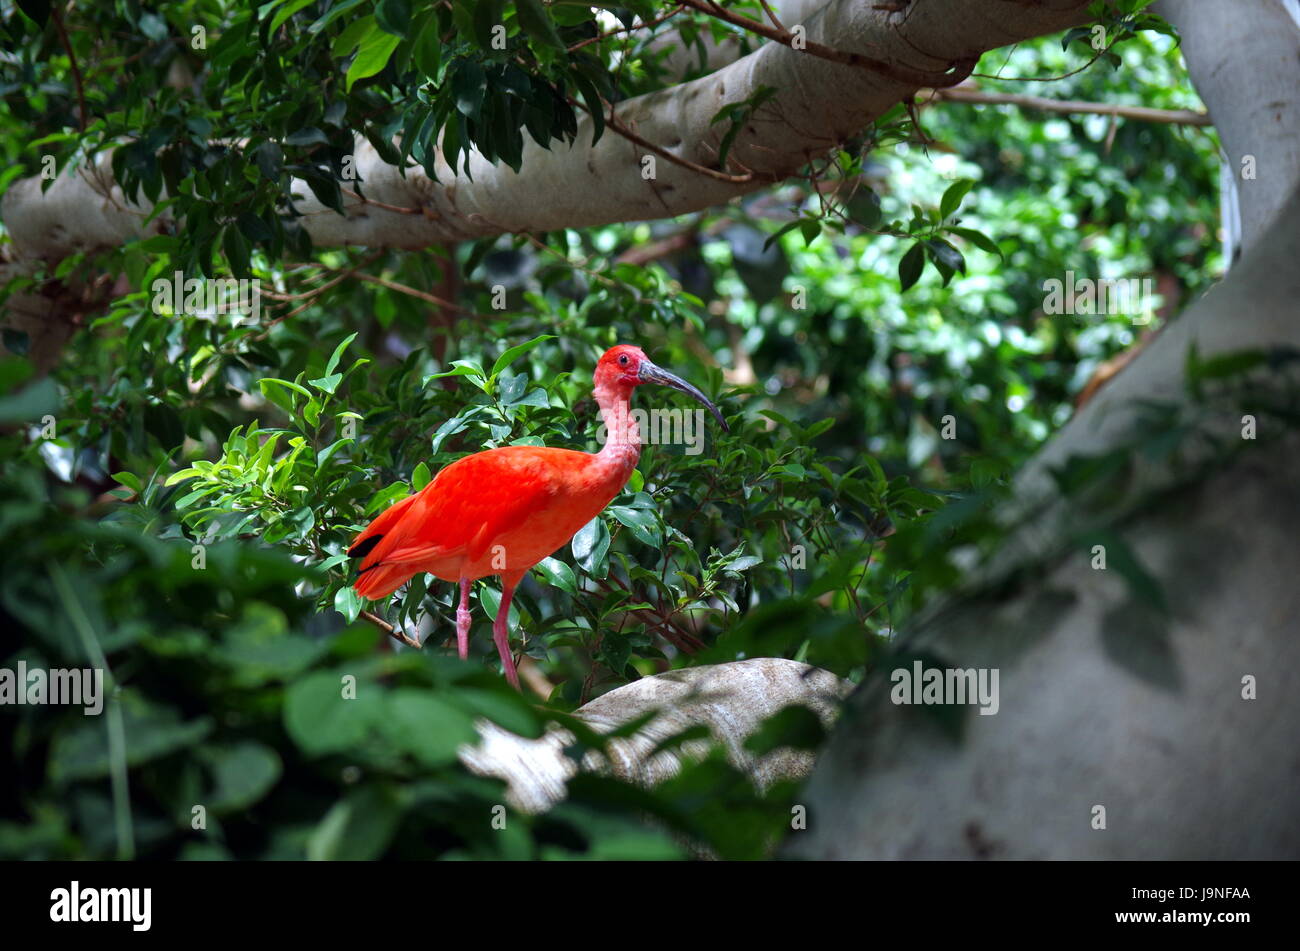 Dieser Flamingo ist unter den Bäumen in der Voliere im Detroit Zoo Fuß. Sehr bunt, rot und grün Bild. Stockfoto